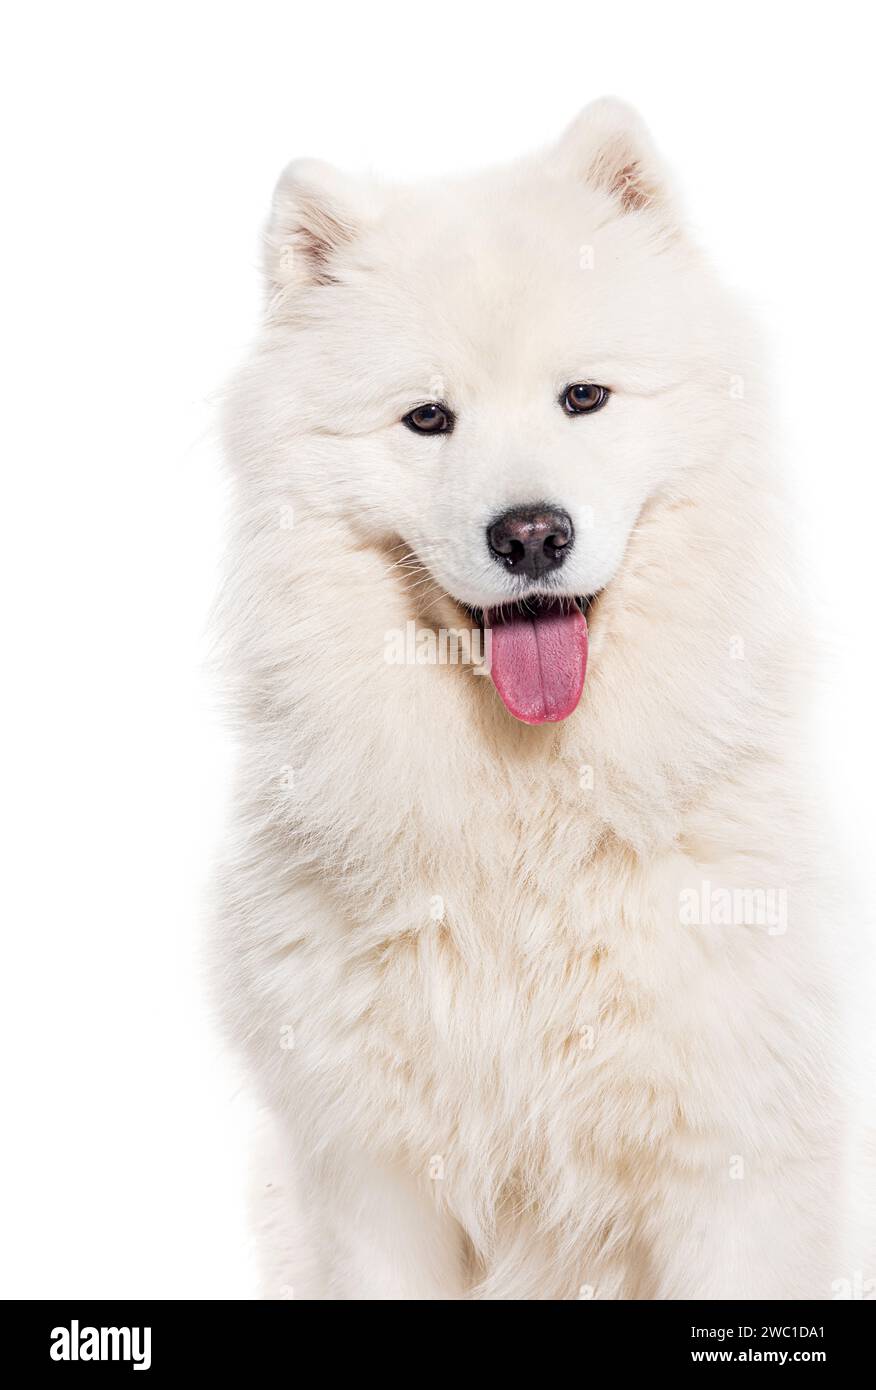 Plan de tête d'un chien blanc Panting Samoyed regardant la caméra, isolé sur blanc Banque D'Images